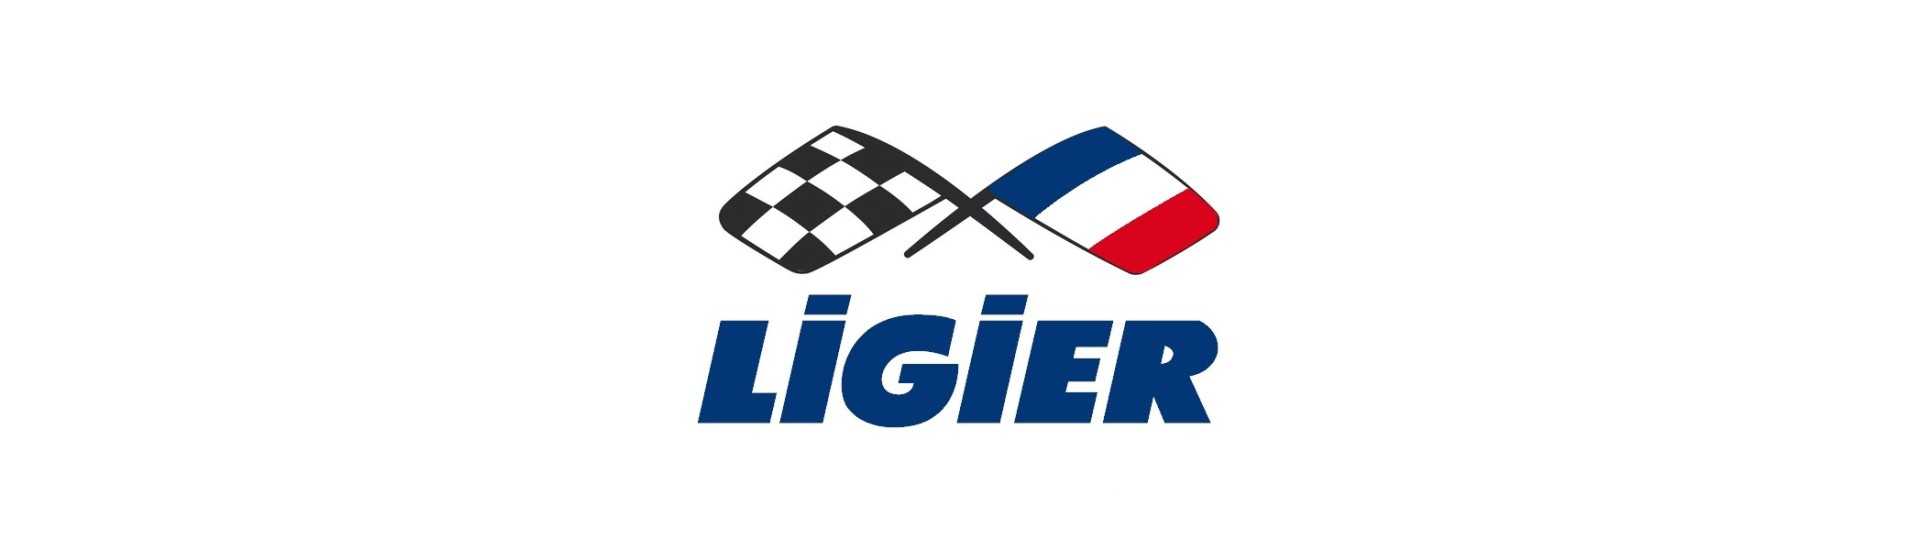 Ripiano posteriore al miglior prezzo per un'auto senza patente Ligier